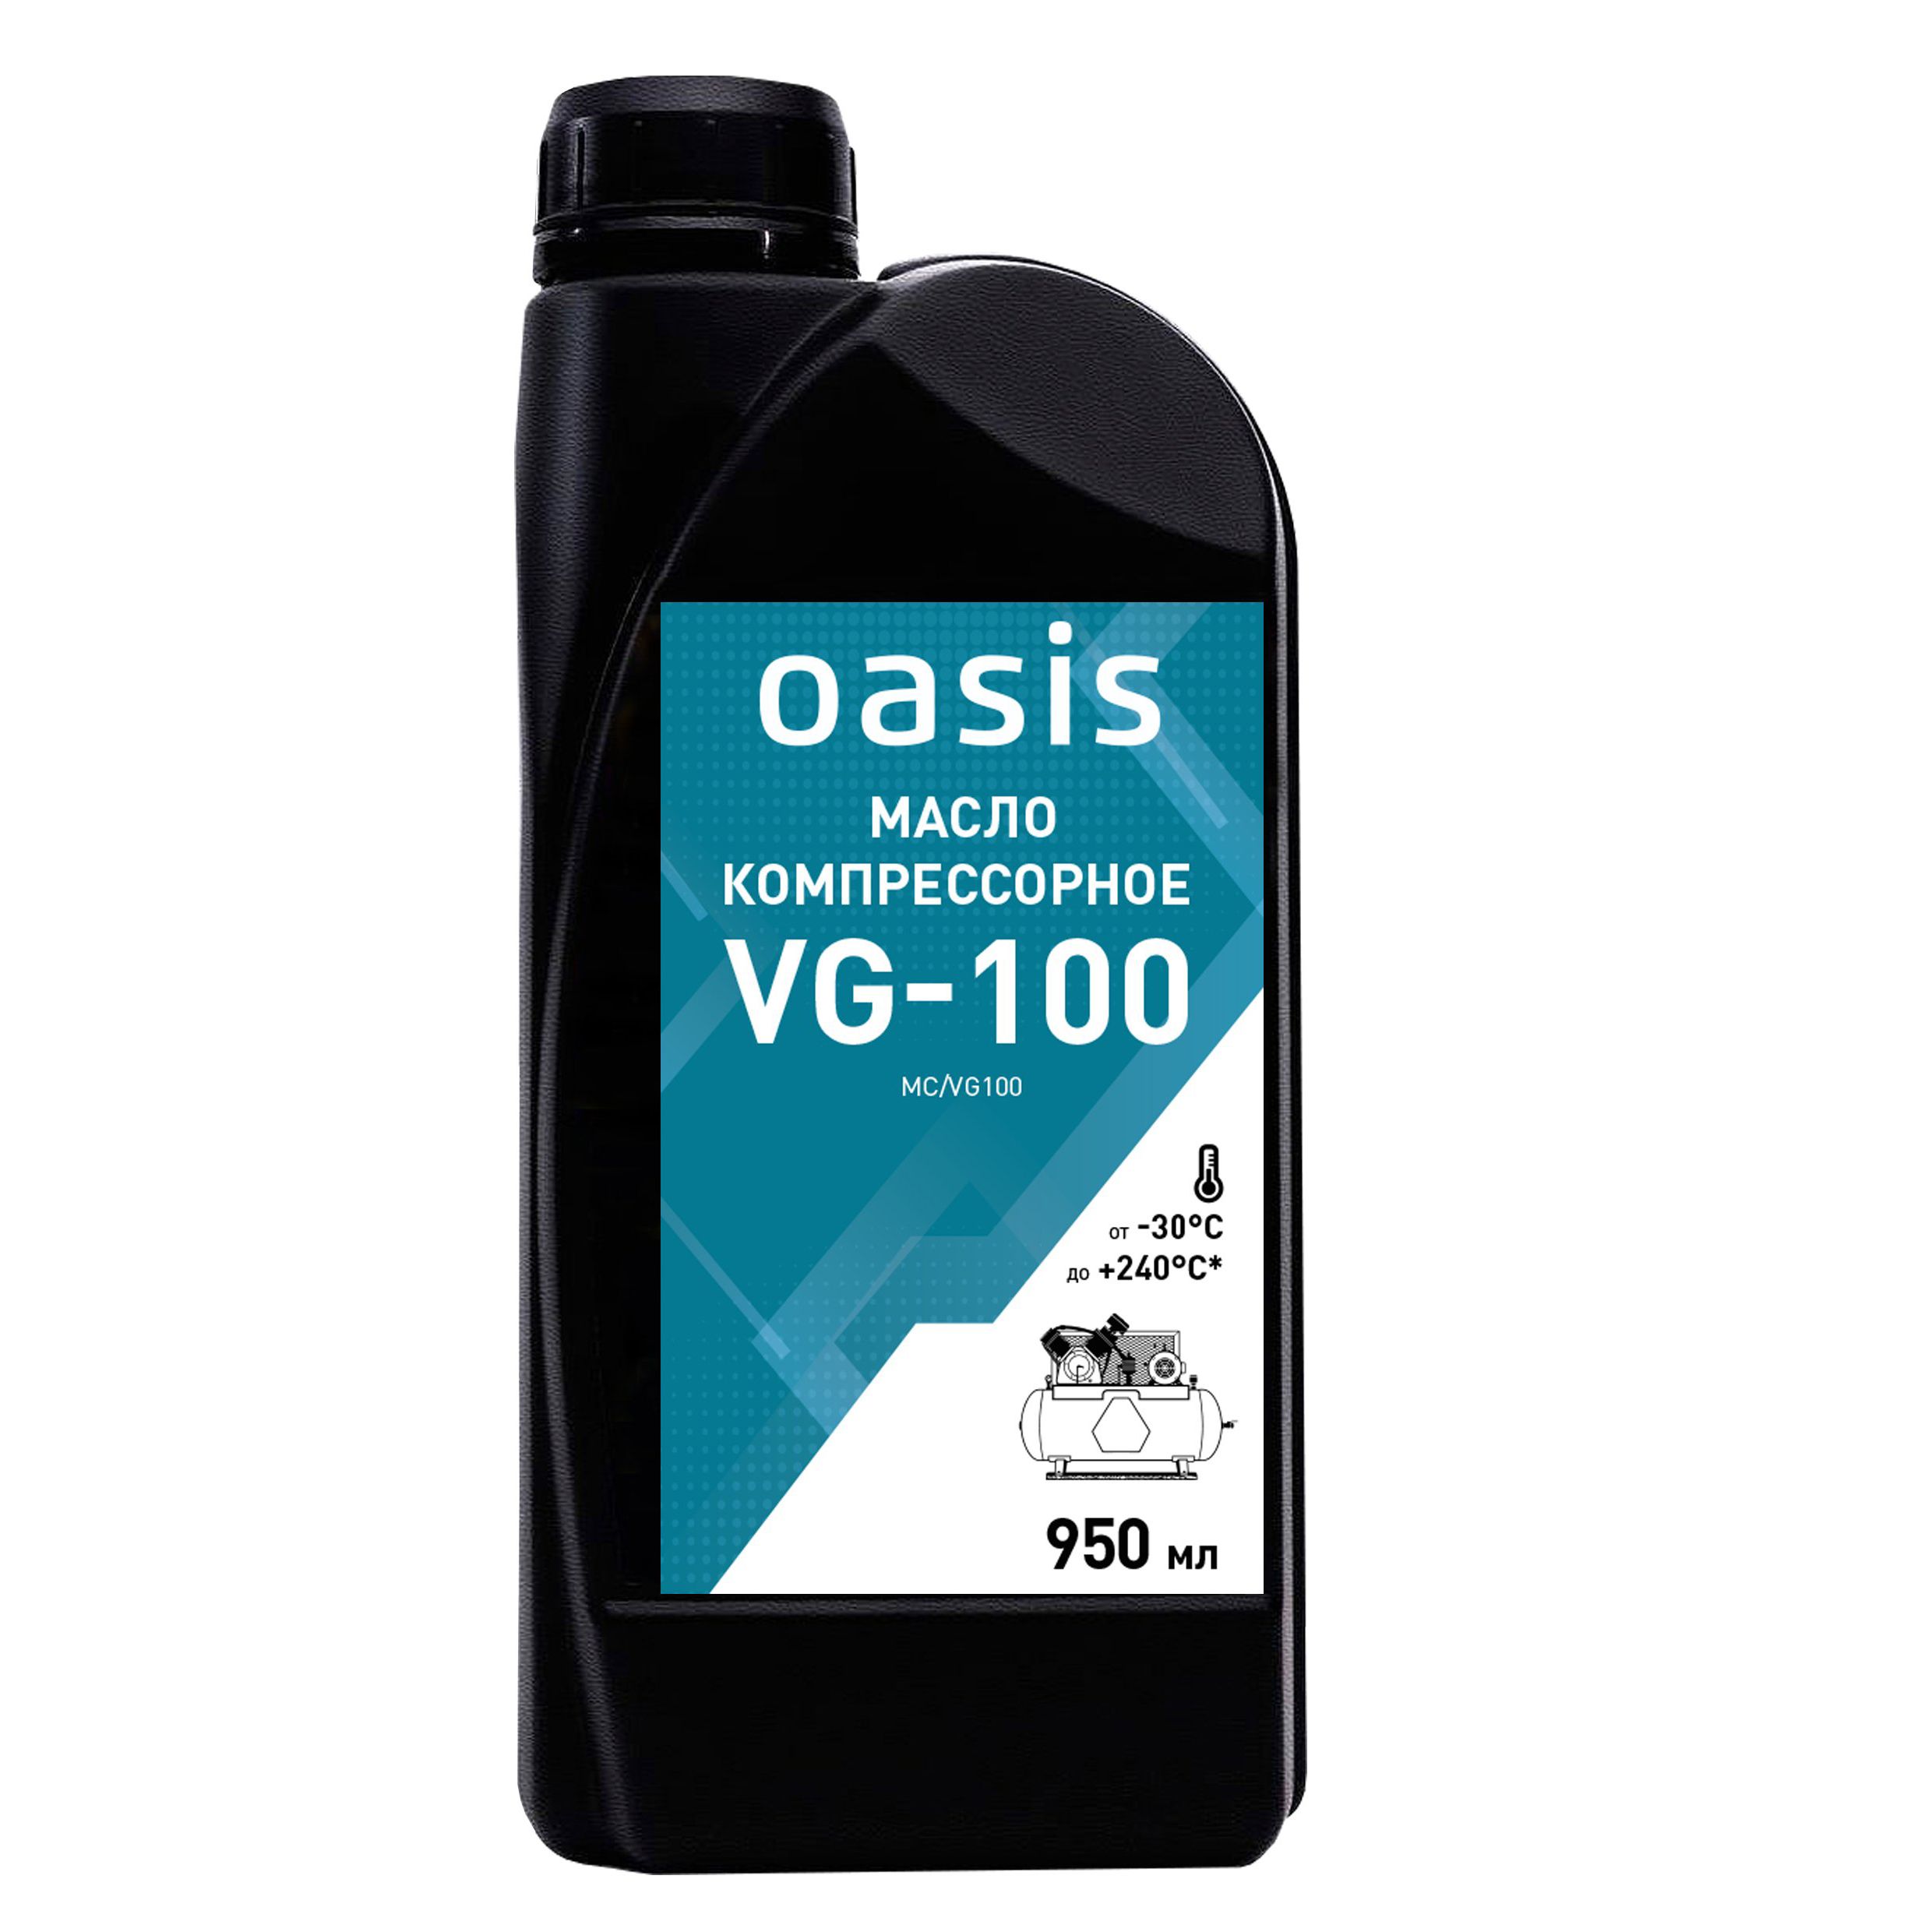 Масло компрессорное VG-100 Oasis MC/VG100 (950 мл)OASIS 4640130950538